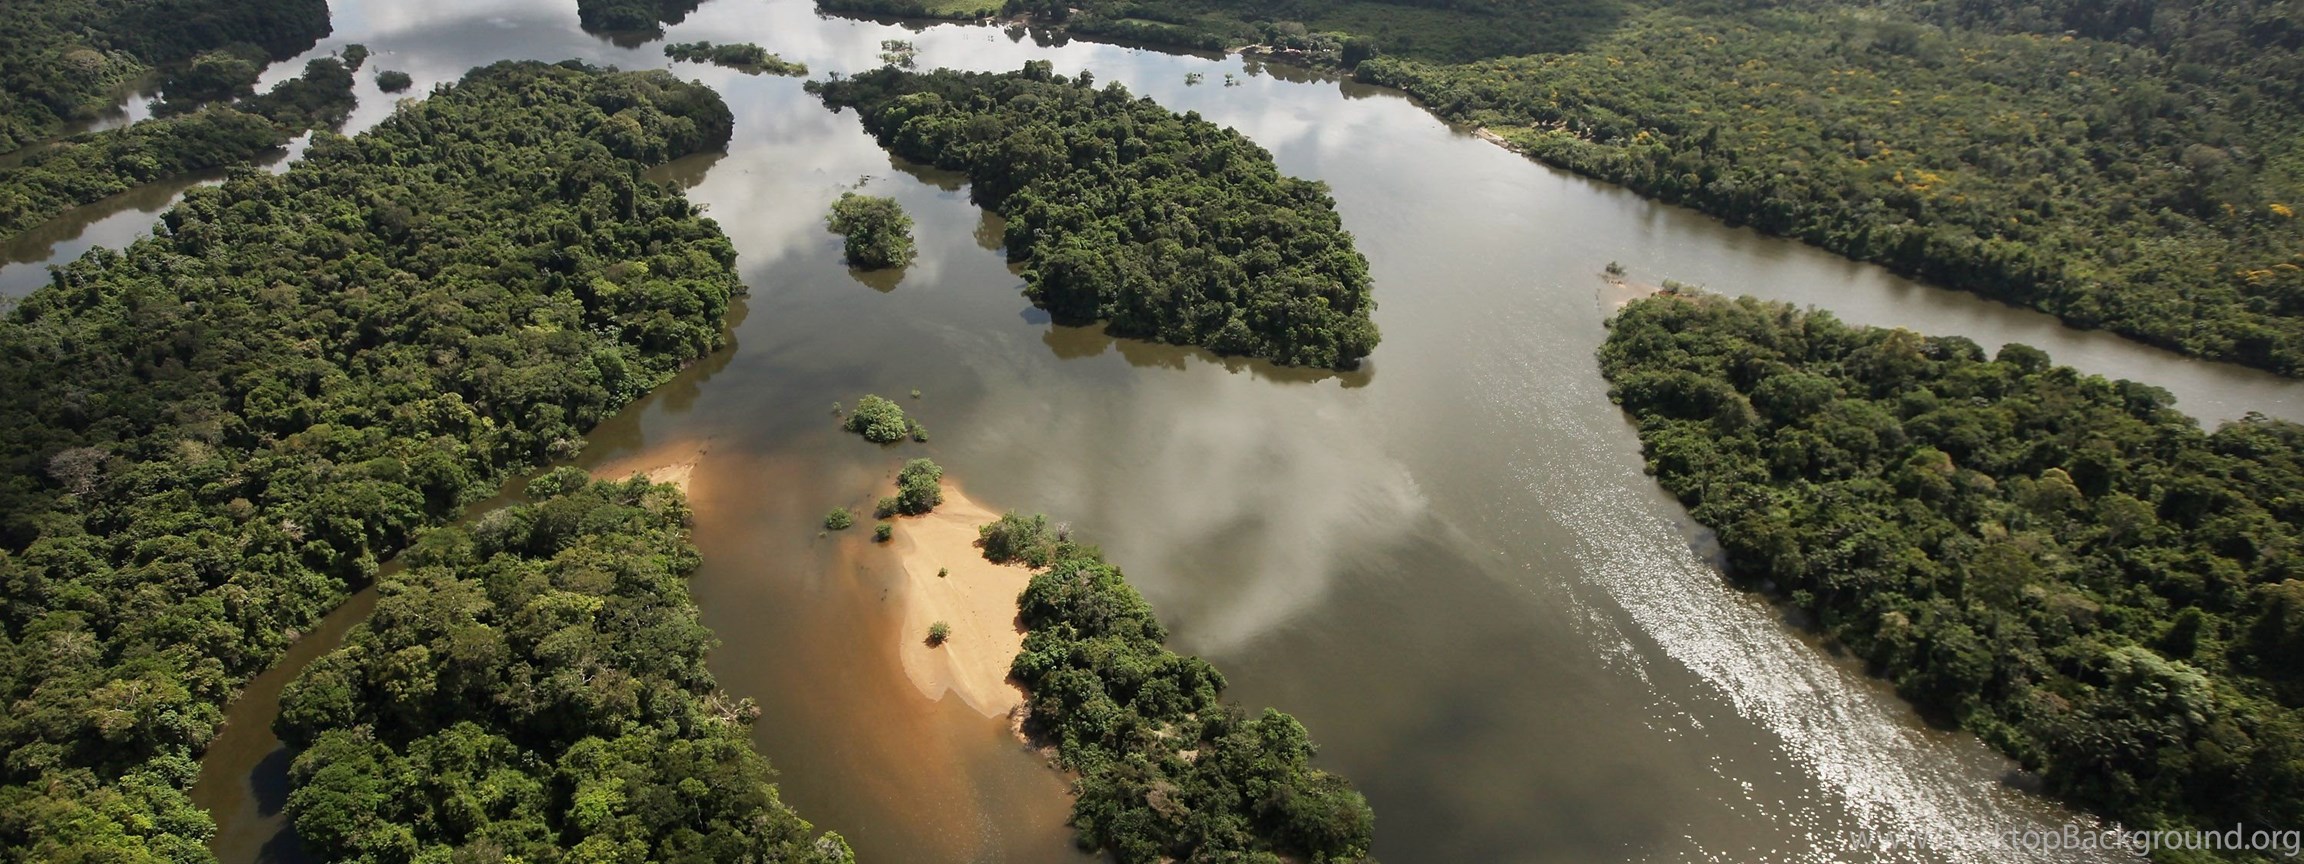 Амазонка полноводна круглый год. Река Амазонка в Бразилии. Реки Амазонка Ориноко Парана. Амазонская низменность.